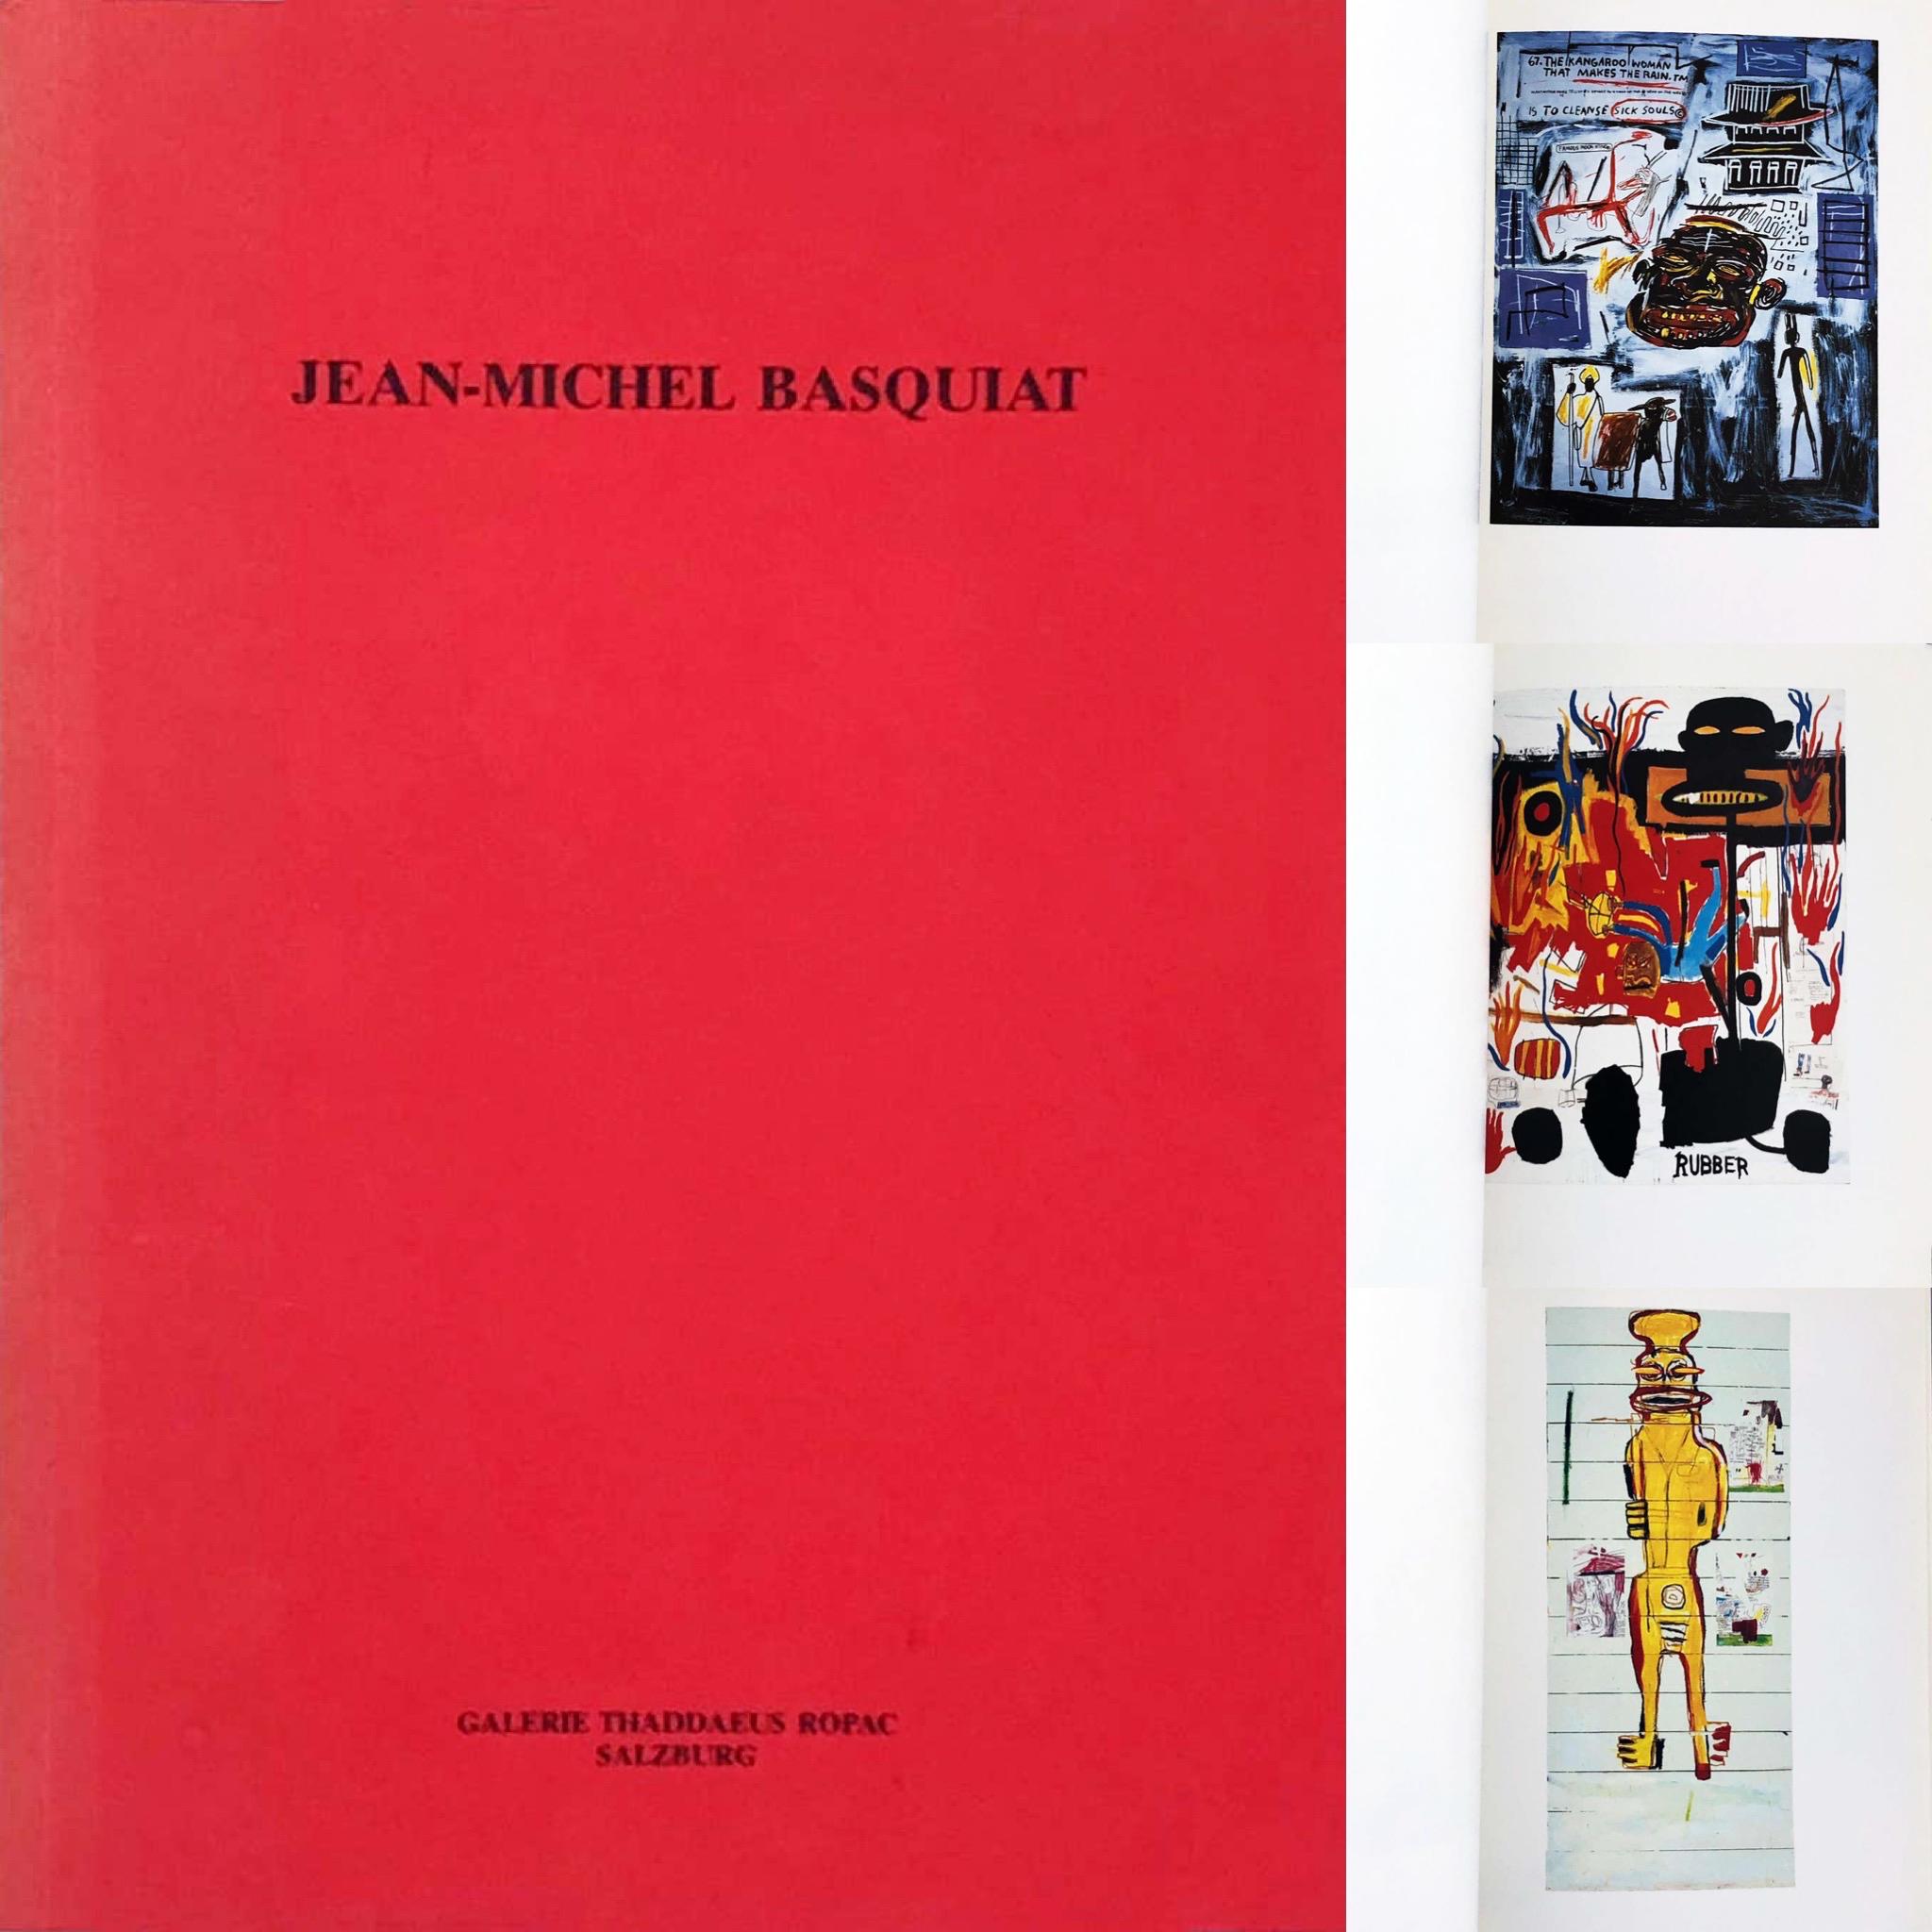 Jean-Michel Basquiat: Bilder 1984–1986 (Basquiat Thaddaeus Ropac gallery 1986)  - Print by after Jean-Michel Basquiat